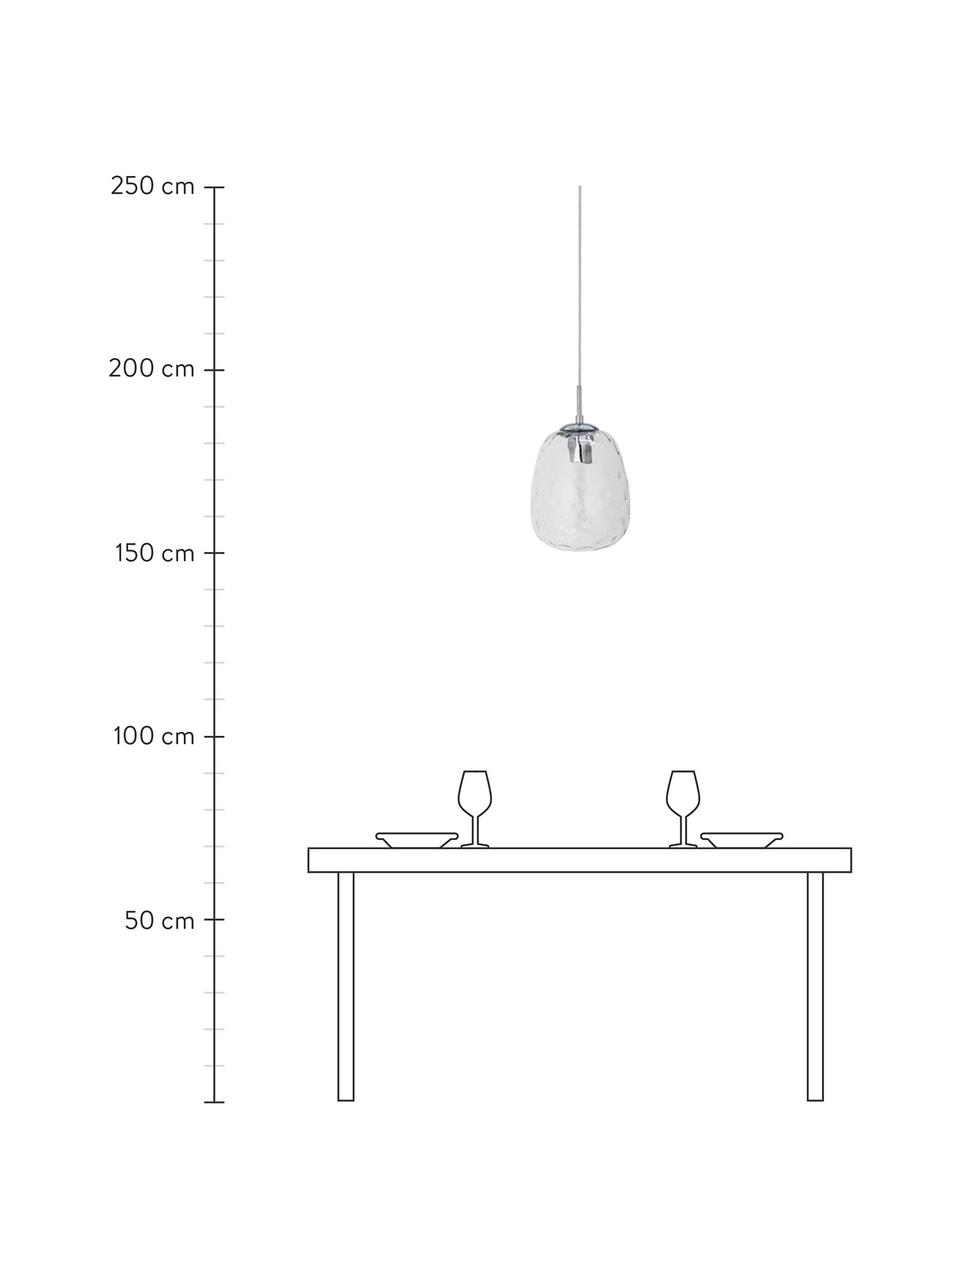 Kleine Pendelleuchte Baele mit strukturierter Oberfläche, Lampenschirm: Glas, Transparent, Ø 20 x H 34 cm